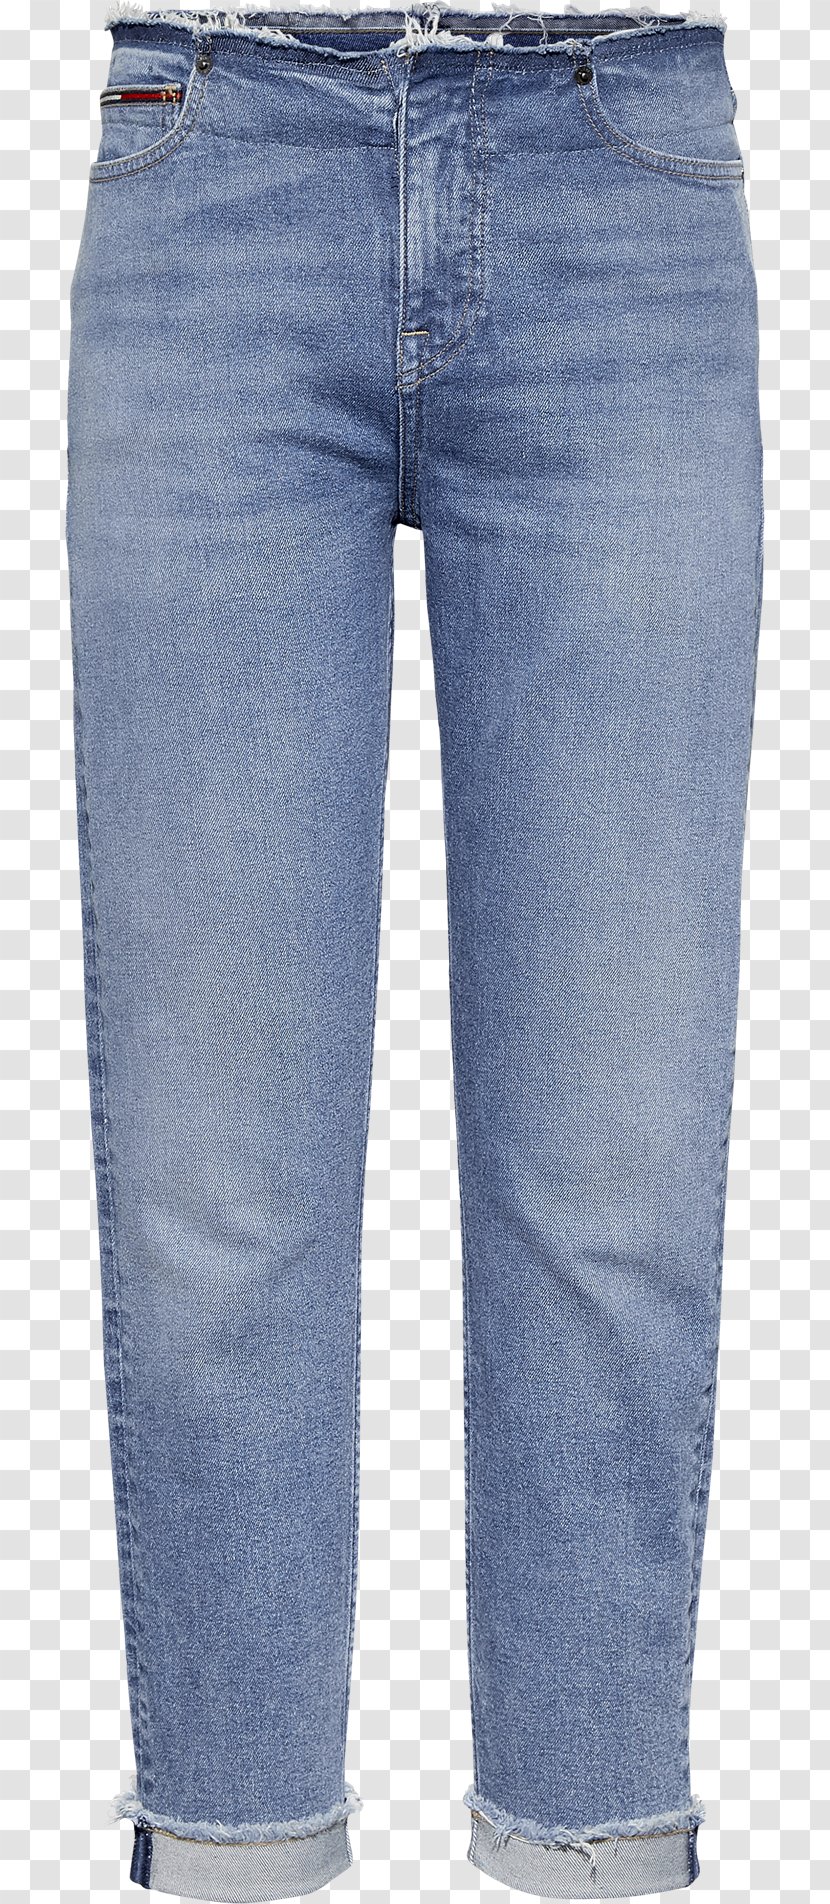 Jeans Denim Pants Cheap Monday Clothing - Heart Transparent PNG